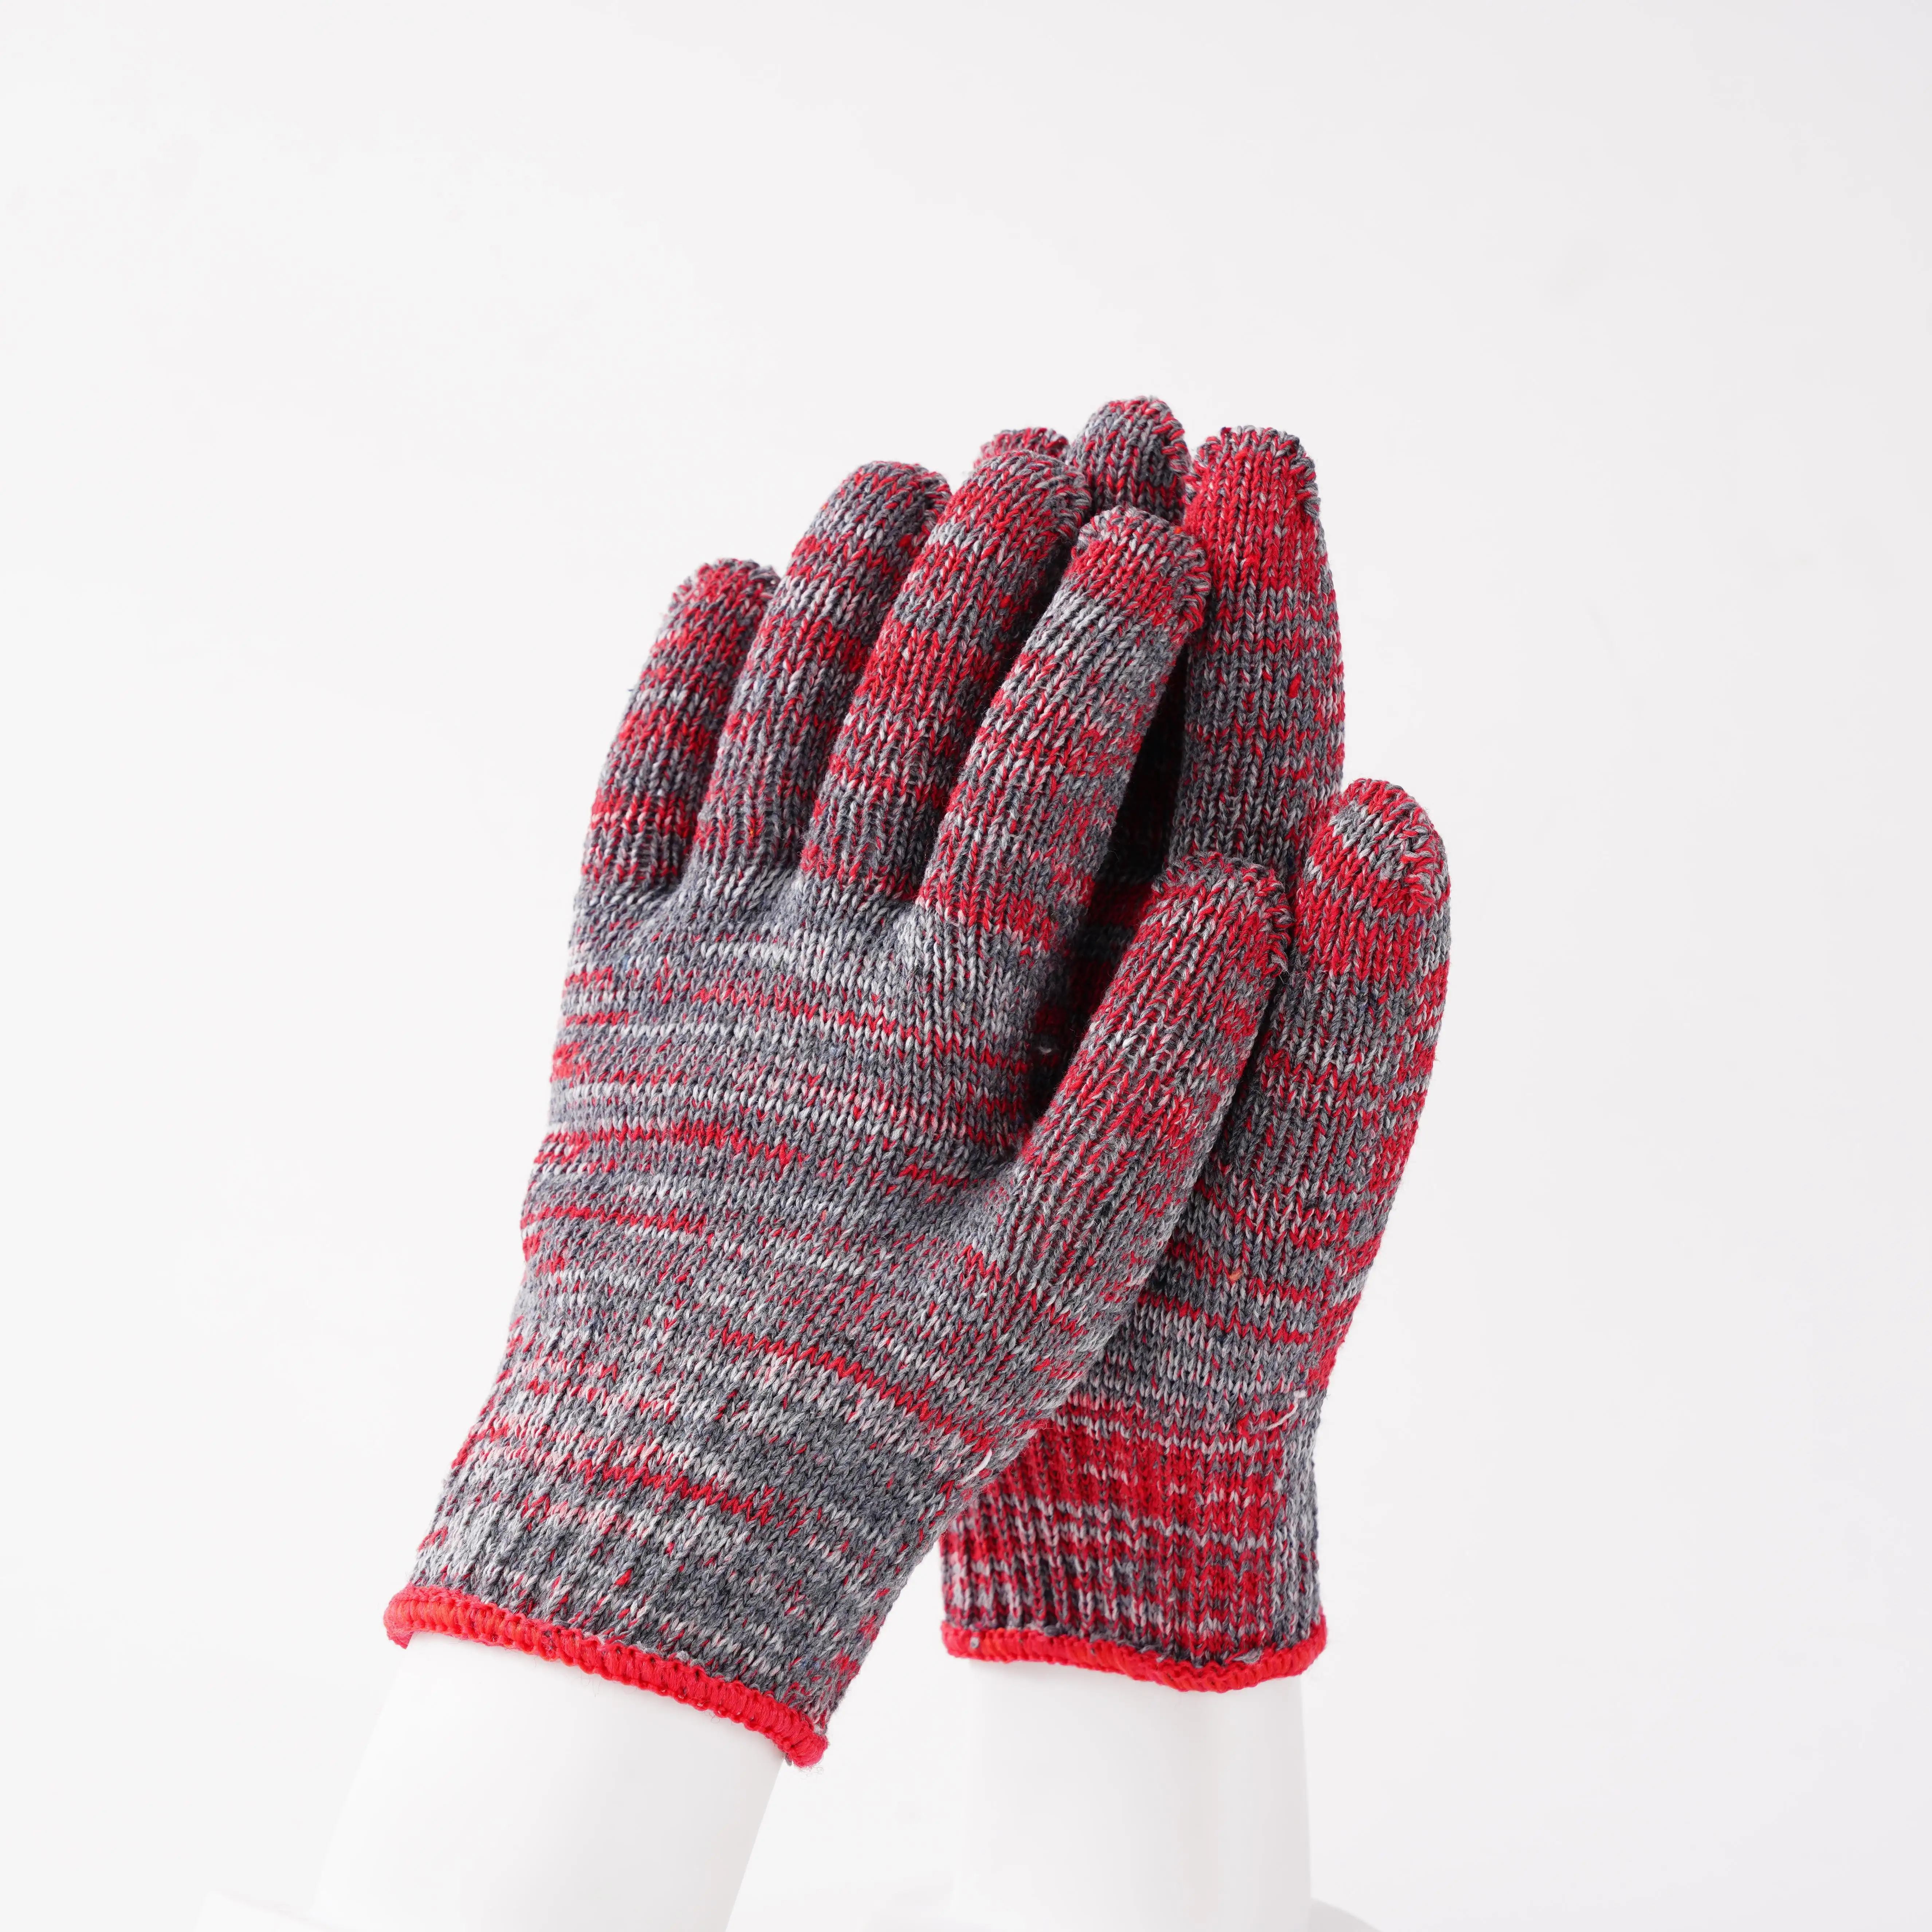 Haustier Silikon Handschuh Bürste Hund Baumwolle Bademantel Bad schwarze Baumwoll handschuhe mit Logo ohne Linien 100% Baumwolle Handschuh